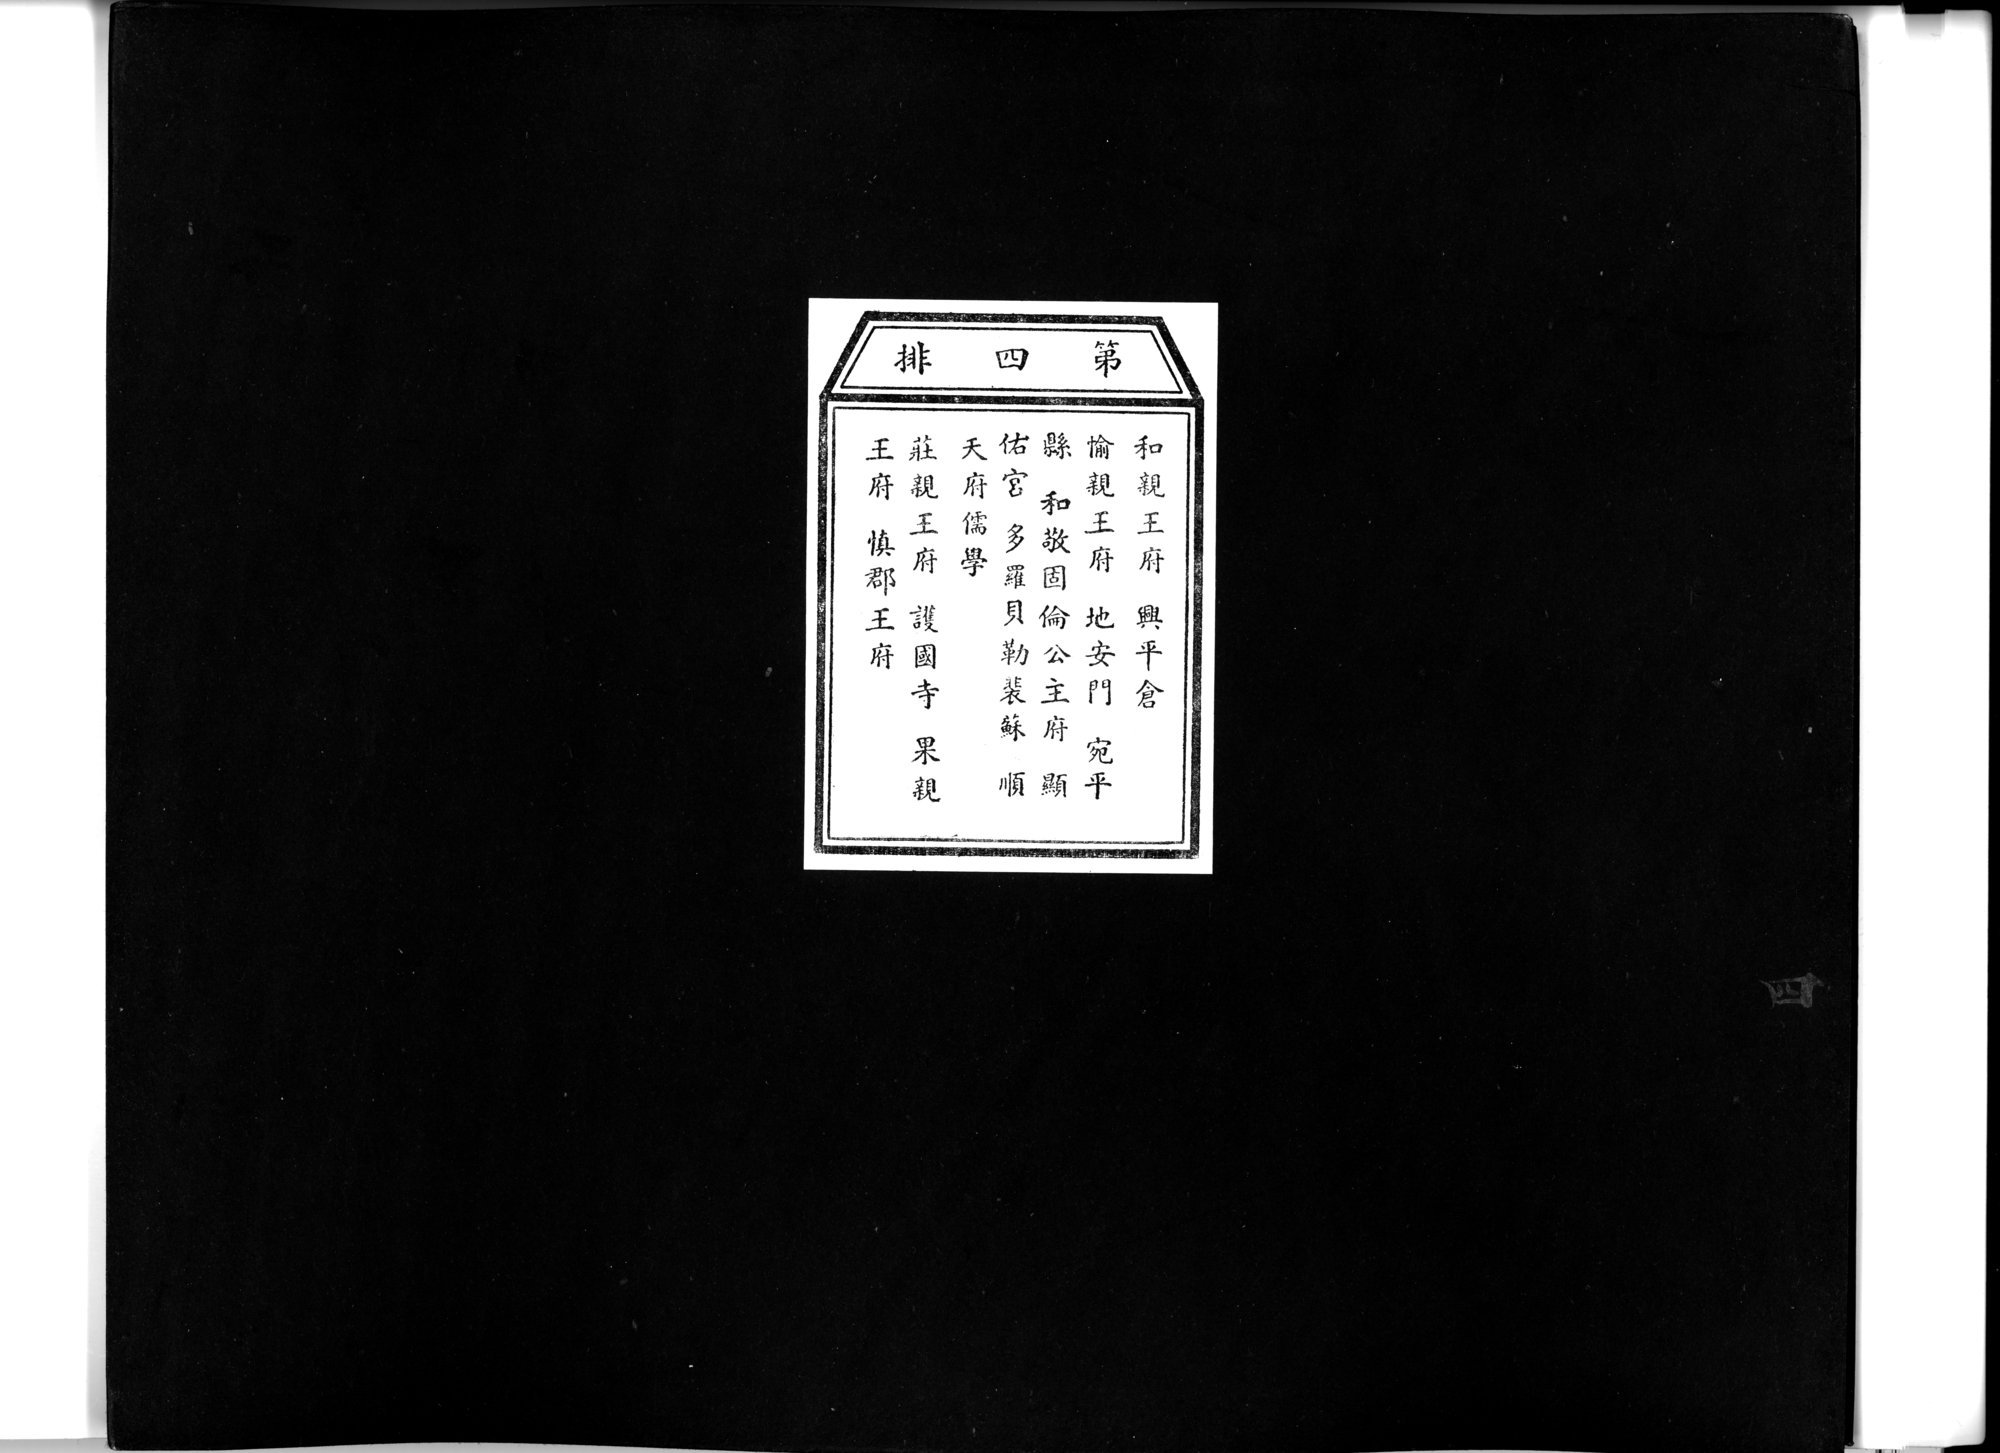 乾隆京城全図 : vol.4 / 1 ページ（白黒高解像度画像）